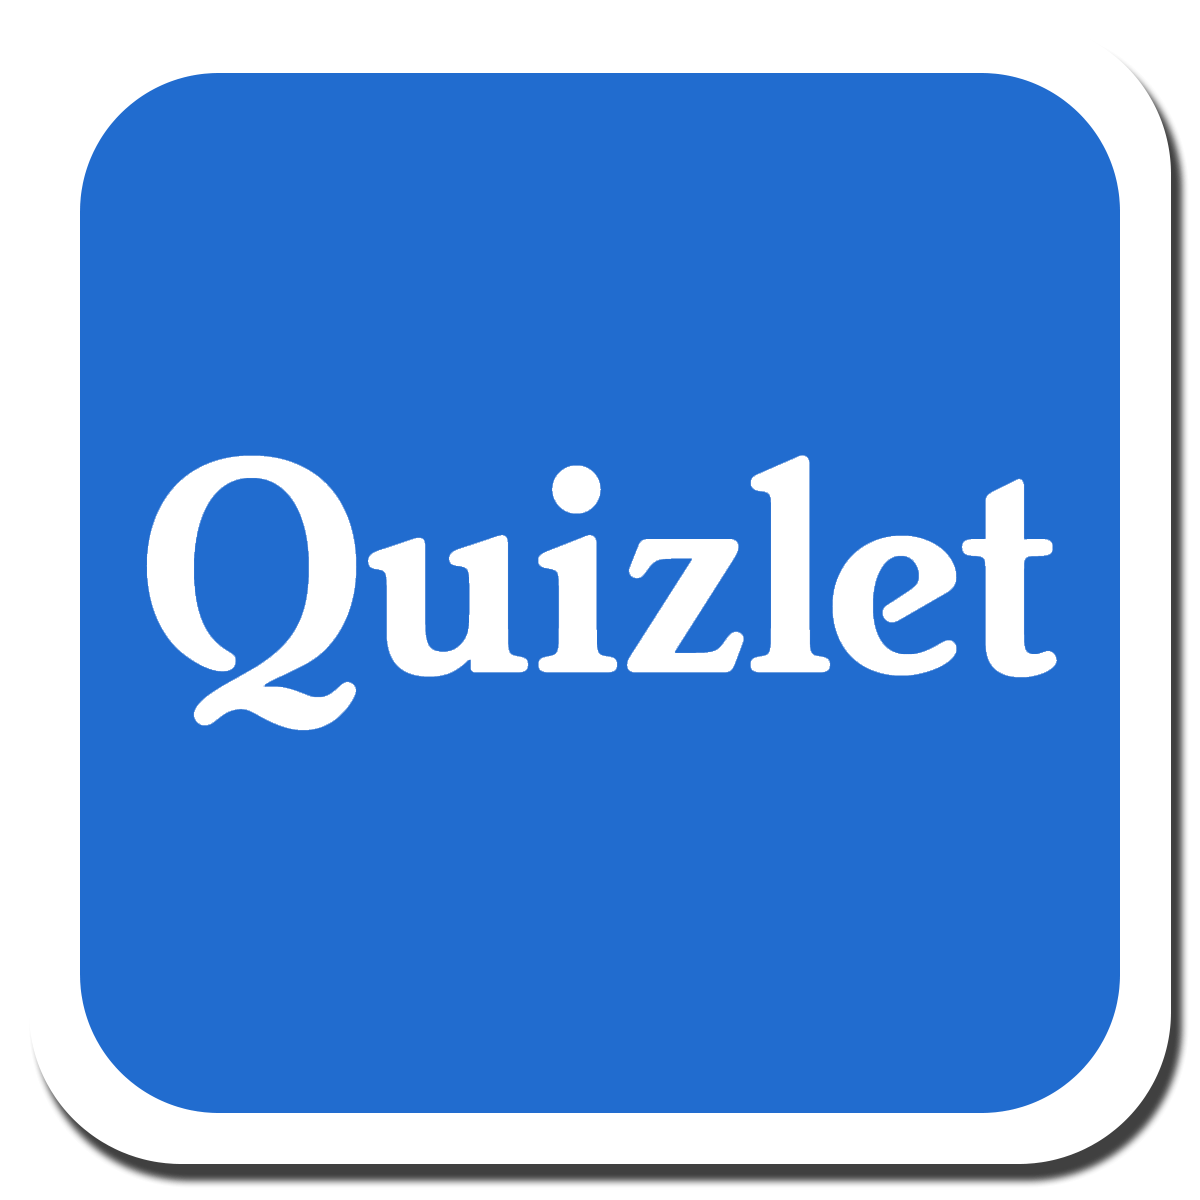 Quizlet - помощь в изучении иностранных слов по карточкам